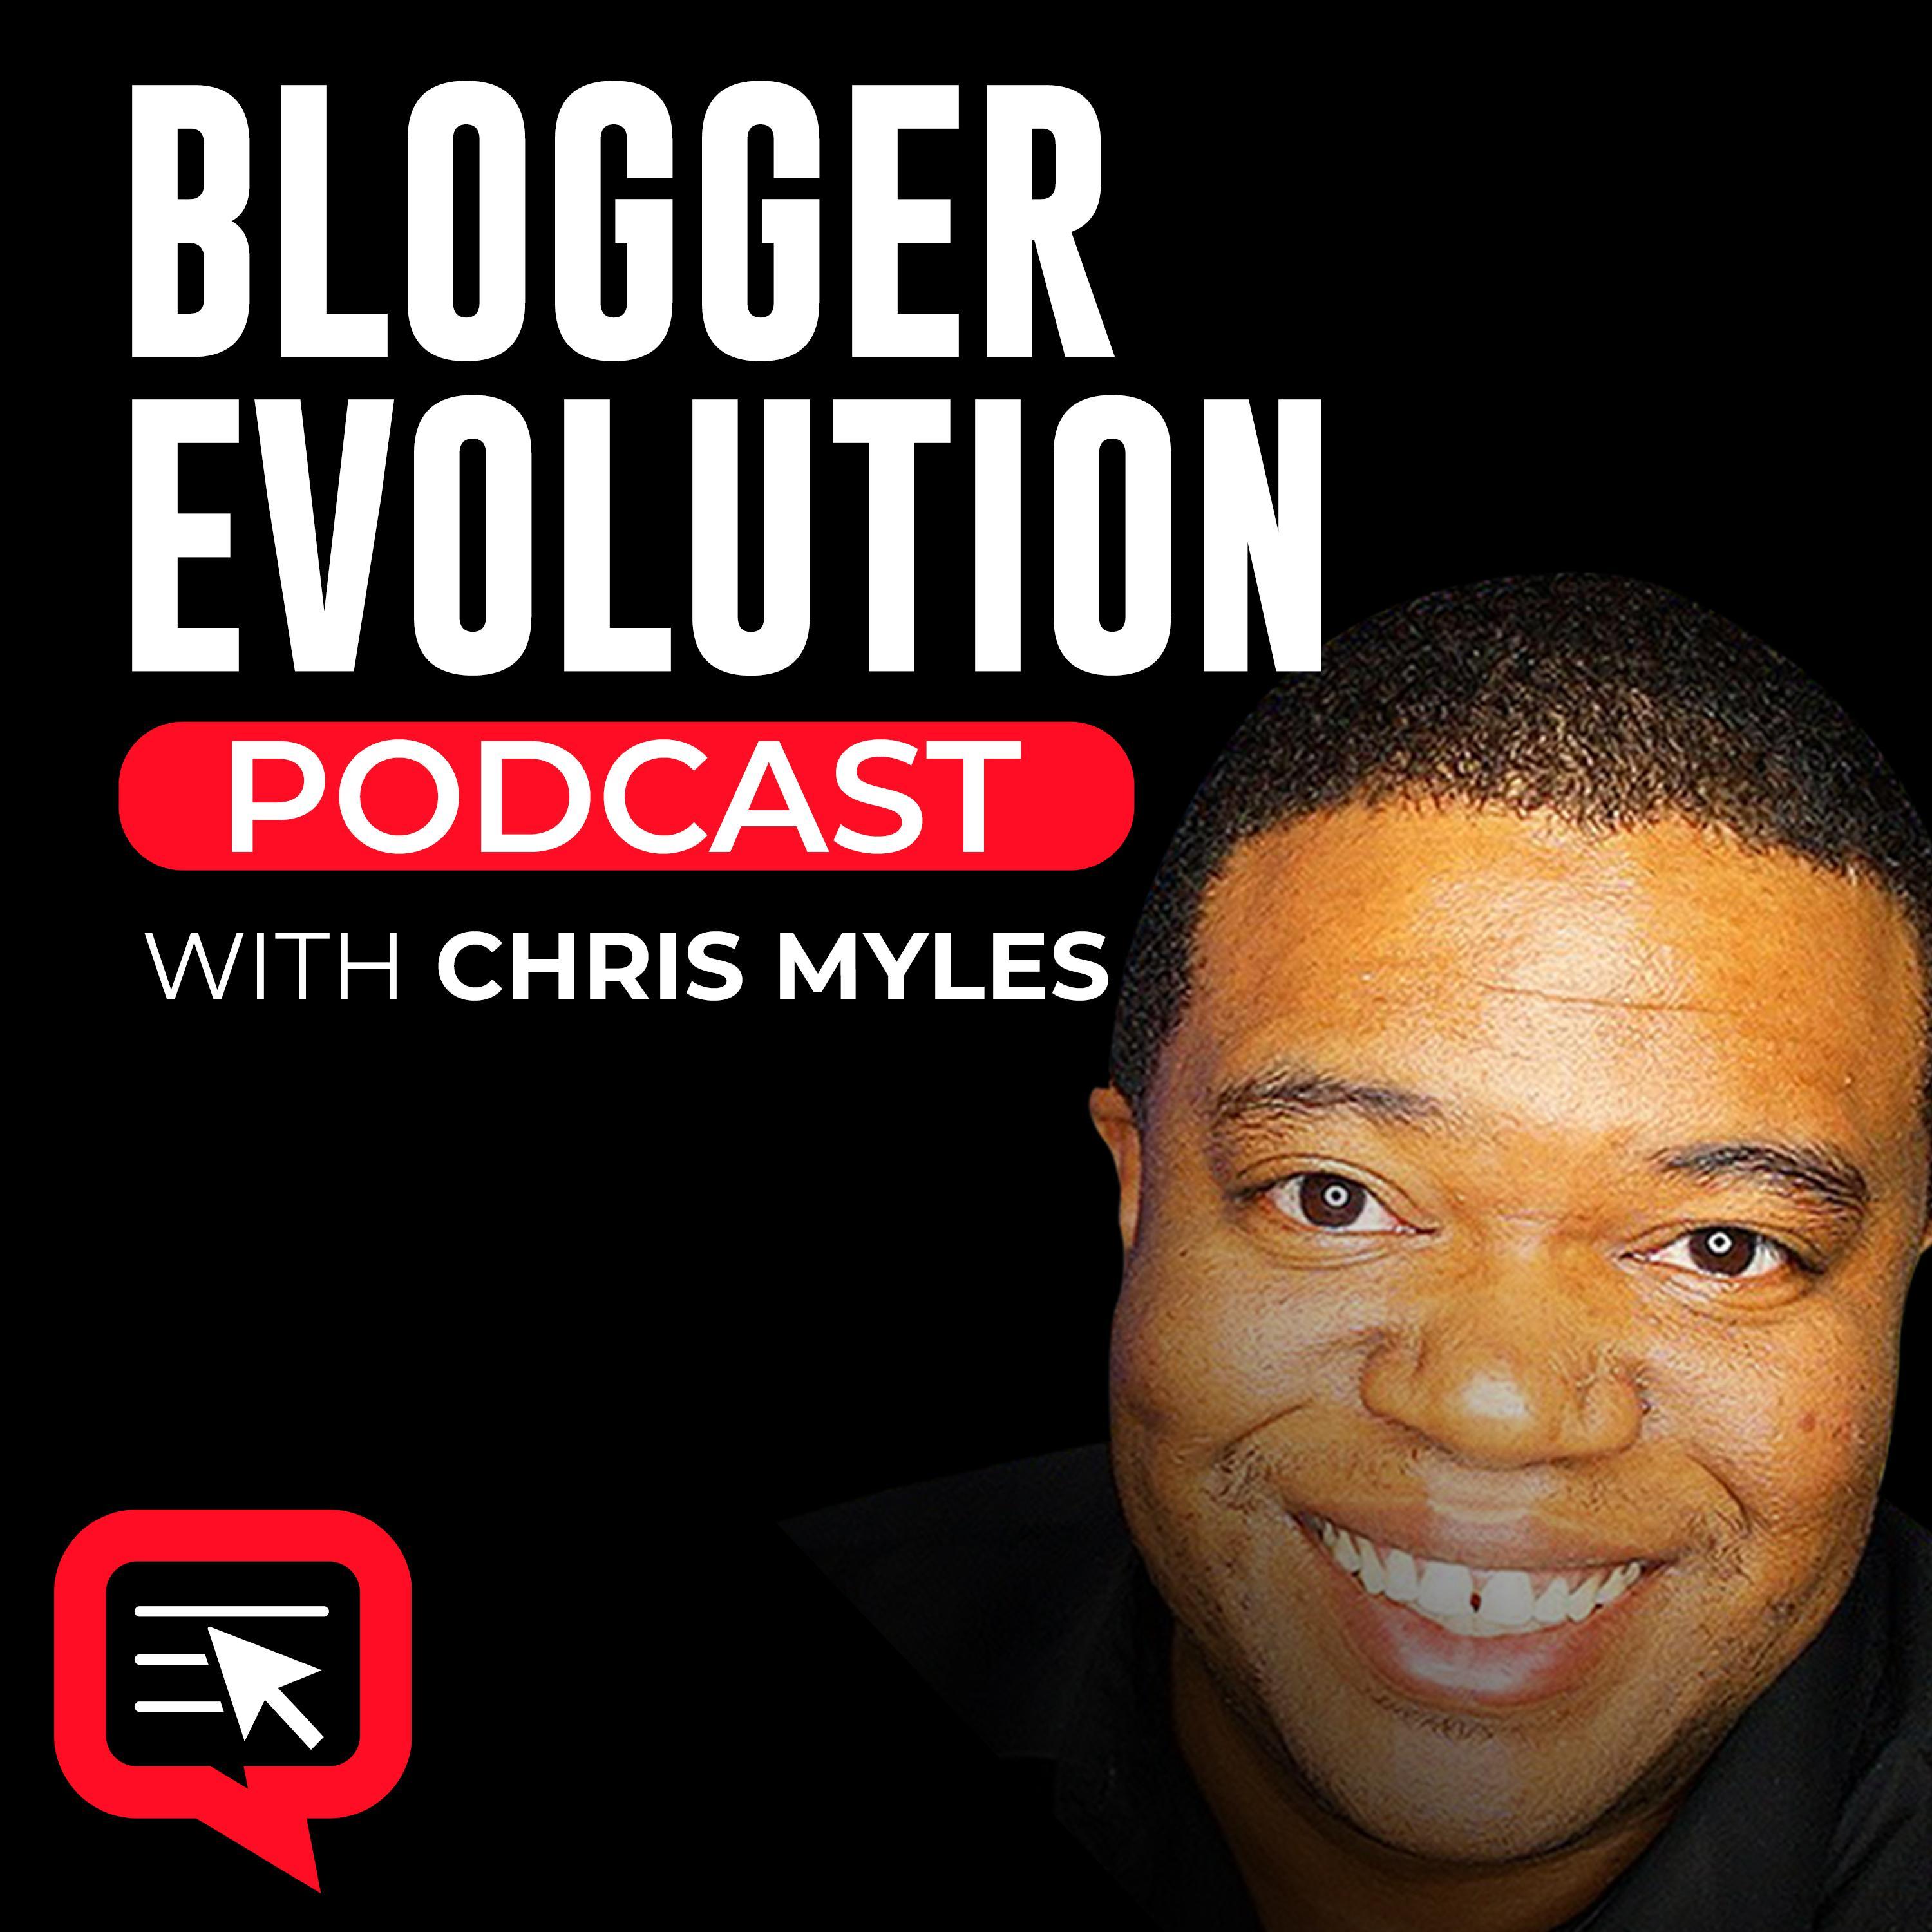 Artwork for podcast Blogger Evolution Podcast